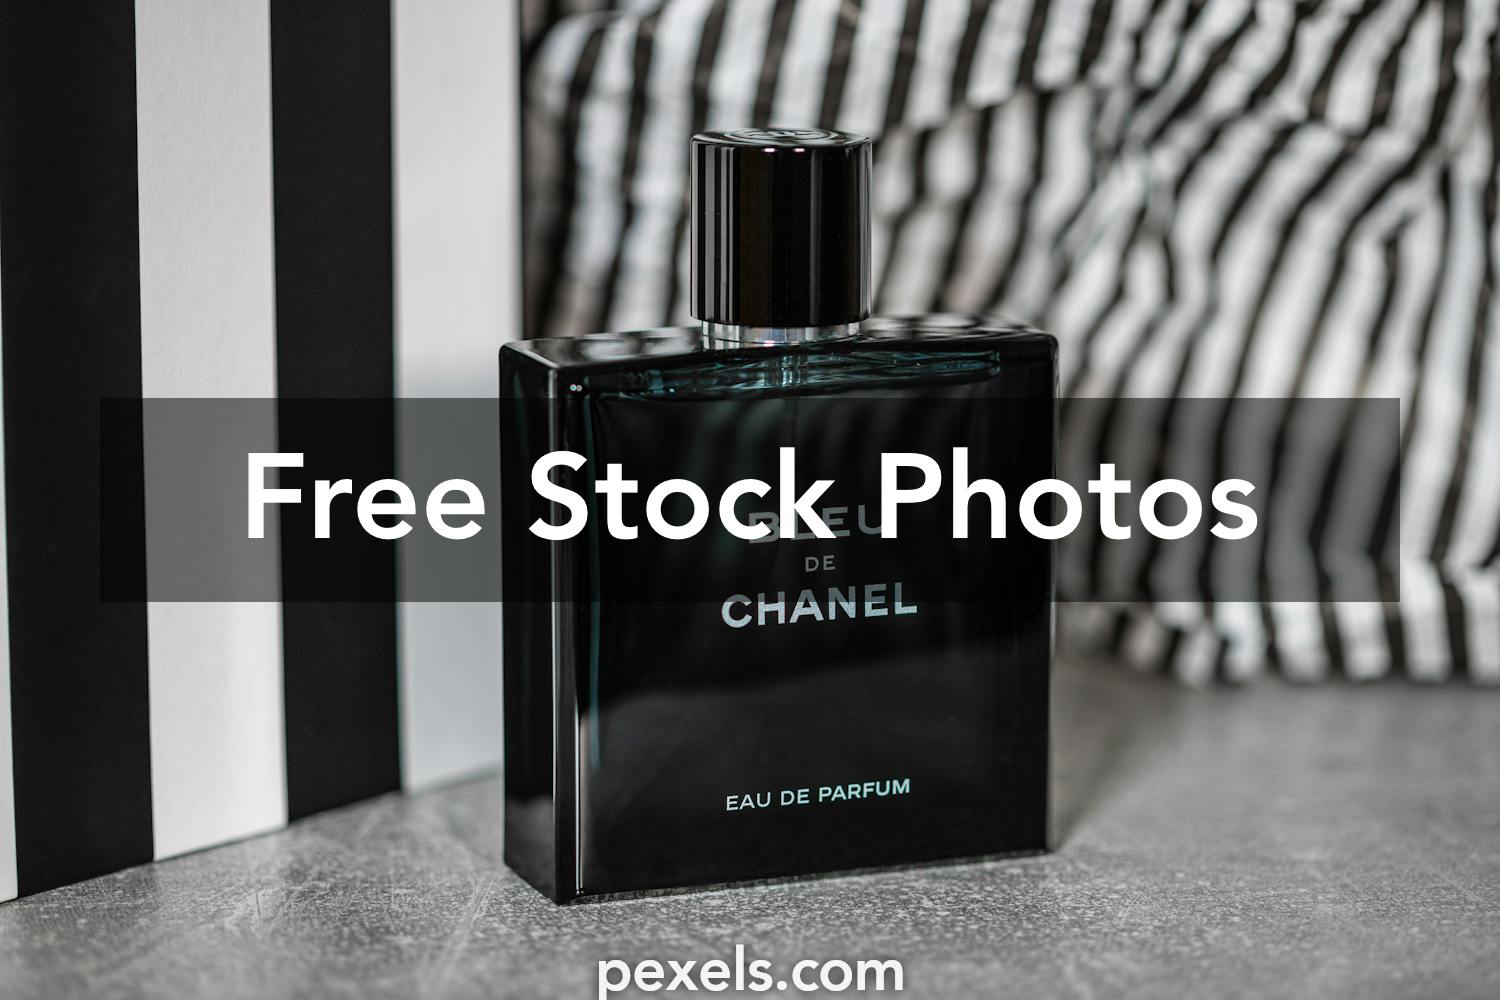 49 Bleu De Chanel Cologne Images, Stock Photos, 3D objects